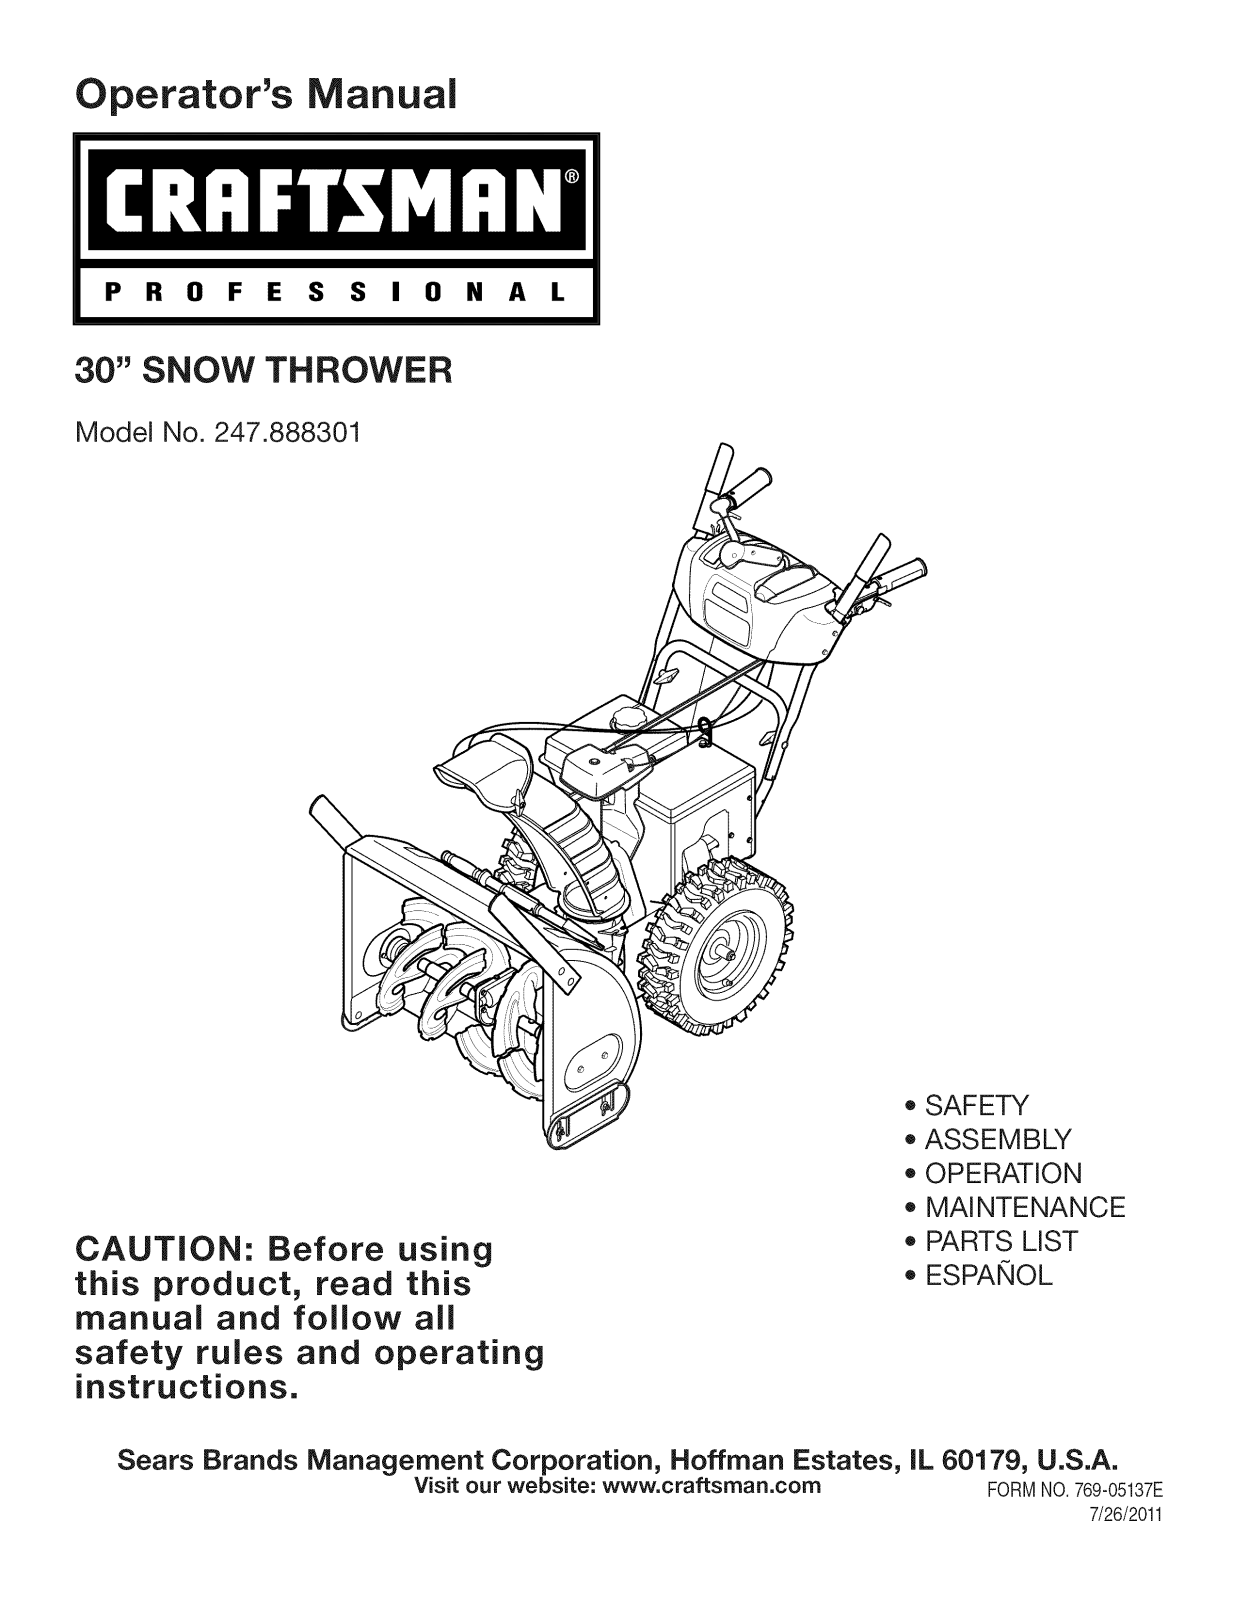 Craftsman 247.888301 User Manual